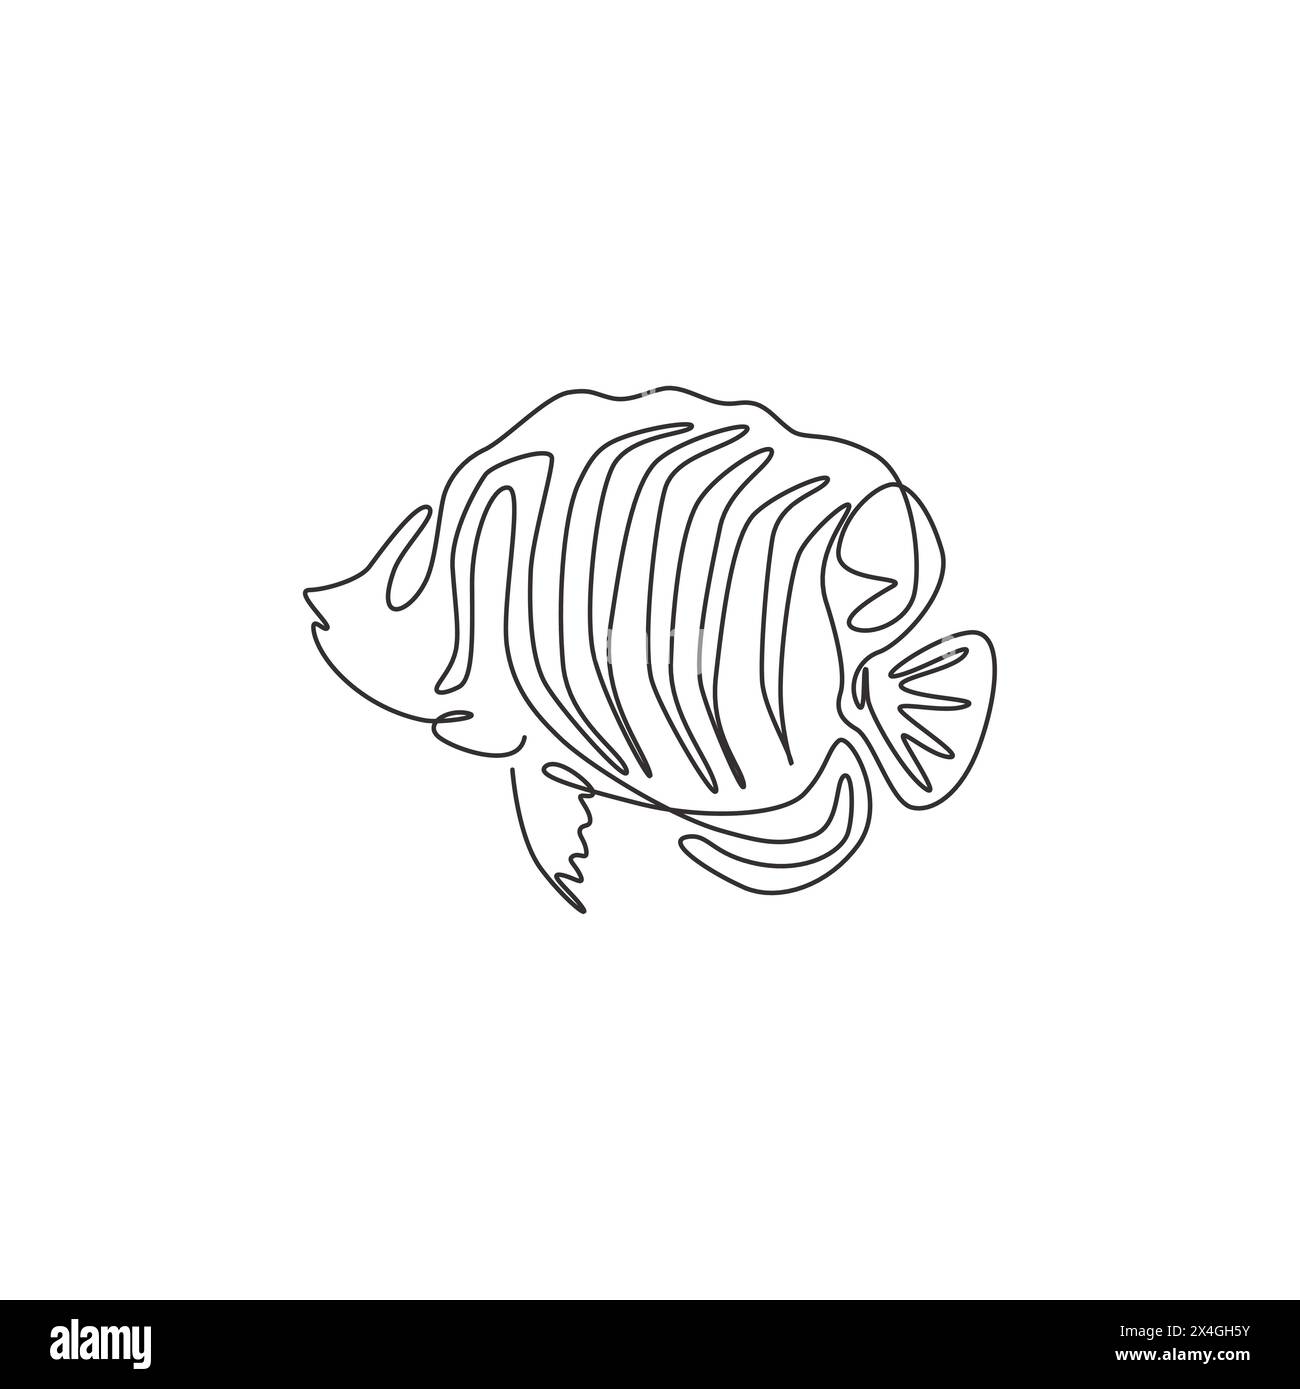 Un dessin en ligne continue de mignon poisson-ange royal pour l'identité du logo de l'entreprise. Concept de mascotte de poisson Sea Angel pour icône de spectacle aquatique. Ligne simple moderne Illustration de Vecteur